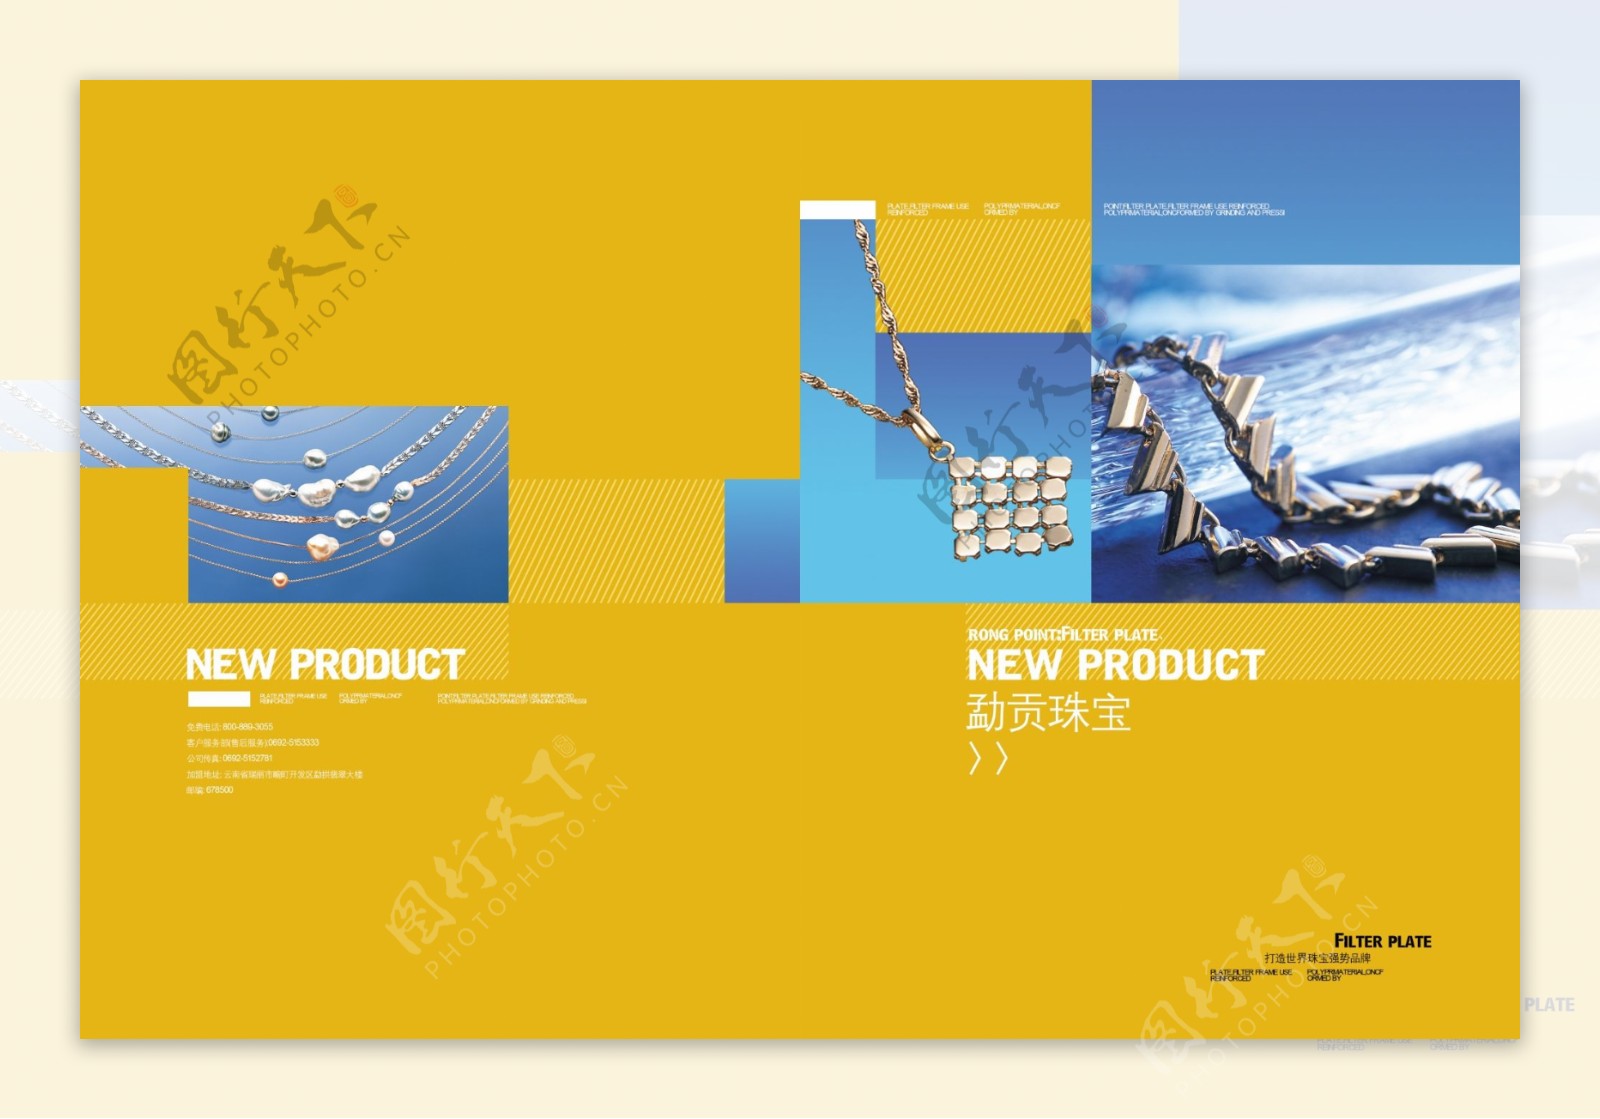 画册模板下载企业画册设计模板版式模板设计画册设计模板宣传画册模板画册封面模板2009画册年8